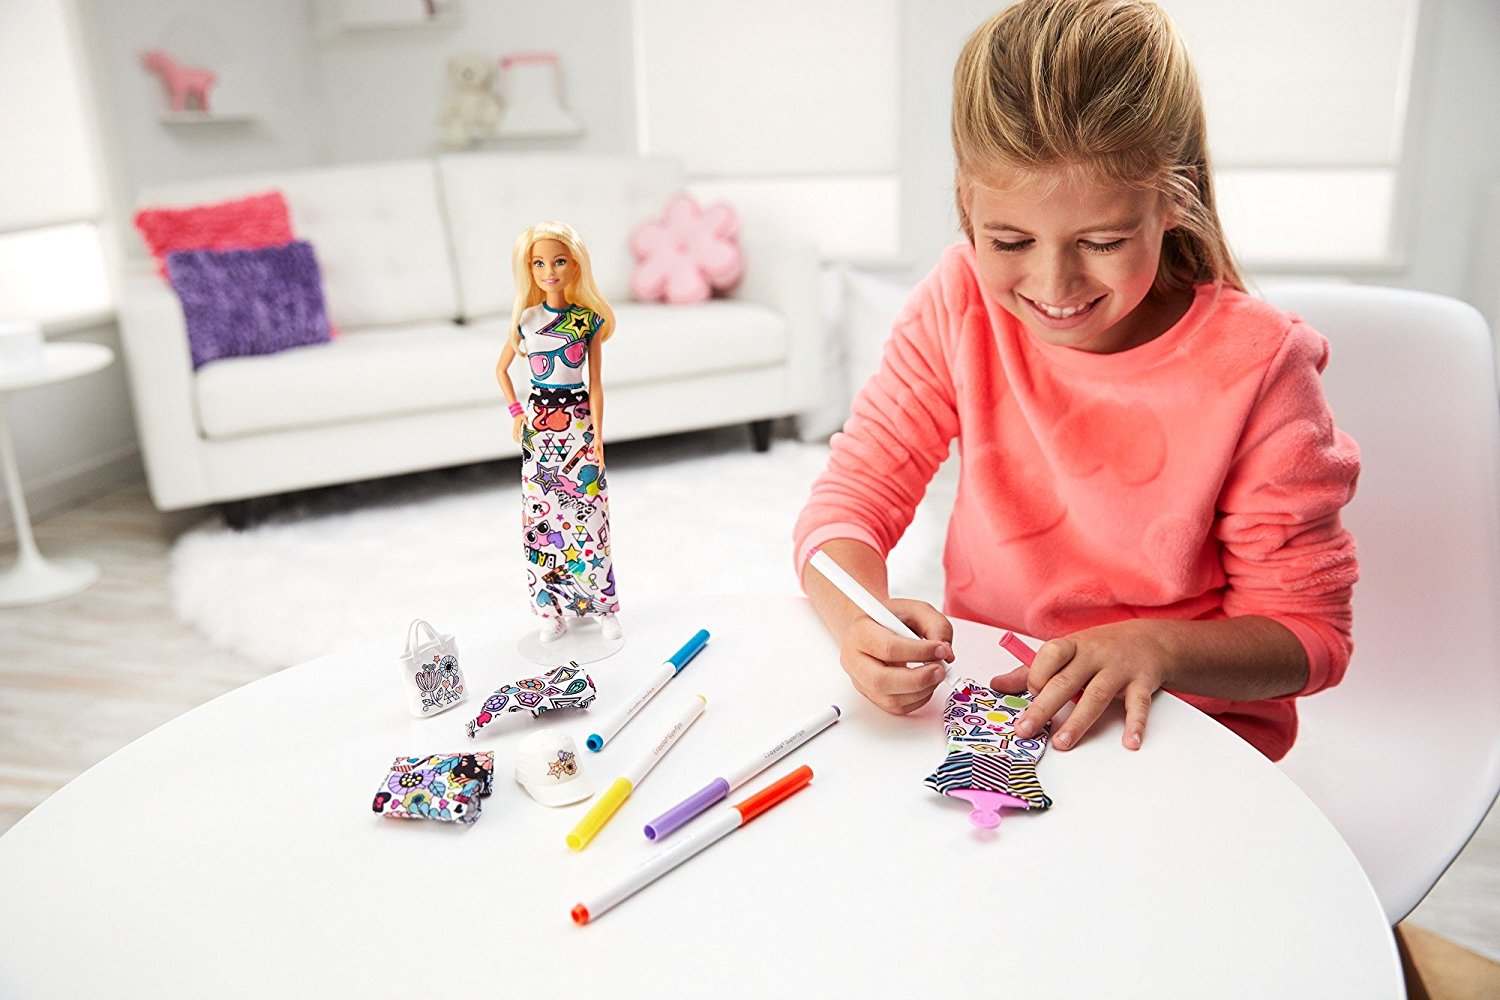 Кукла Barbie Crayola с одеждой-раскраской  